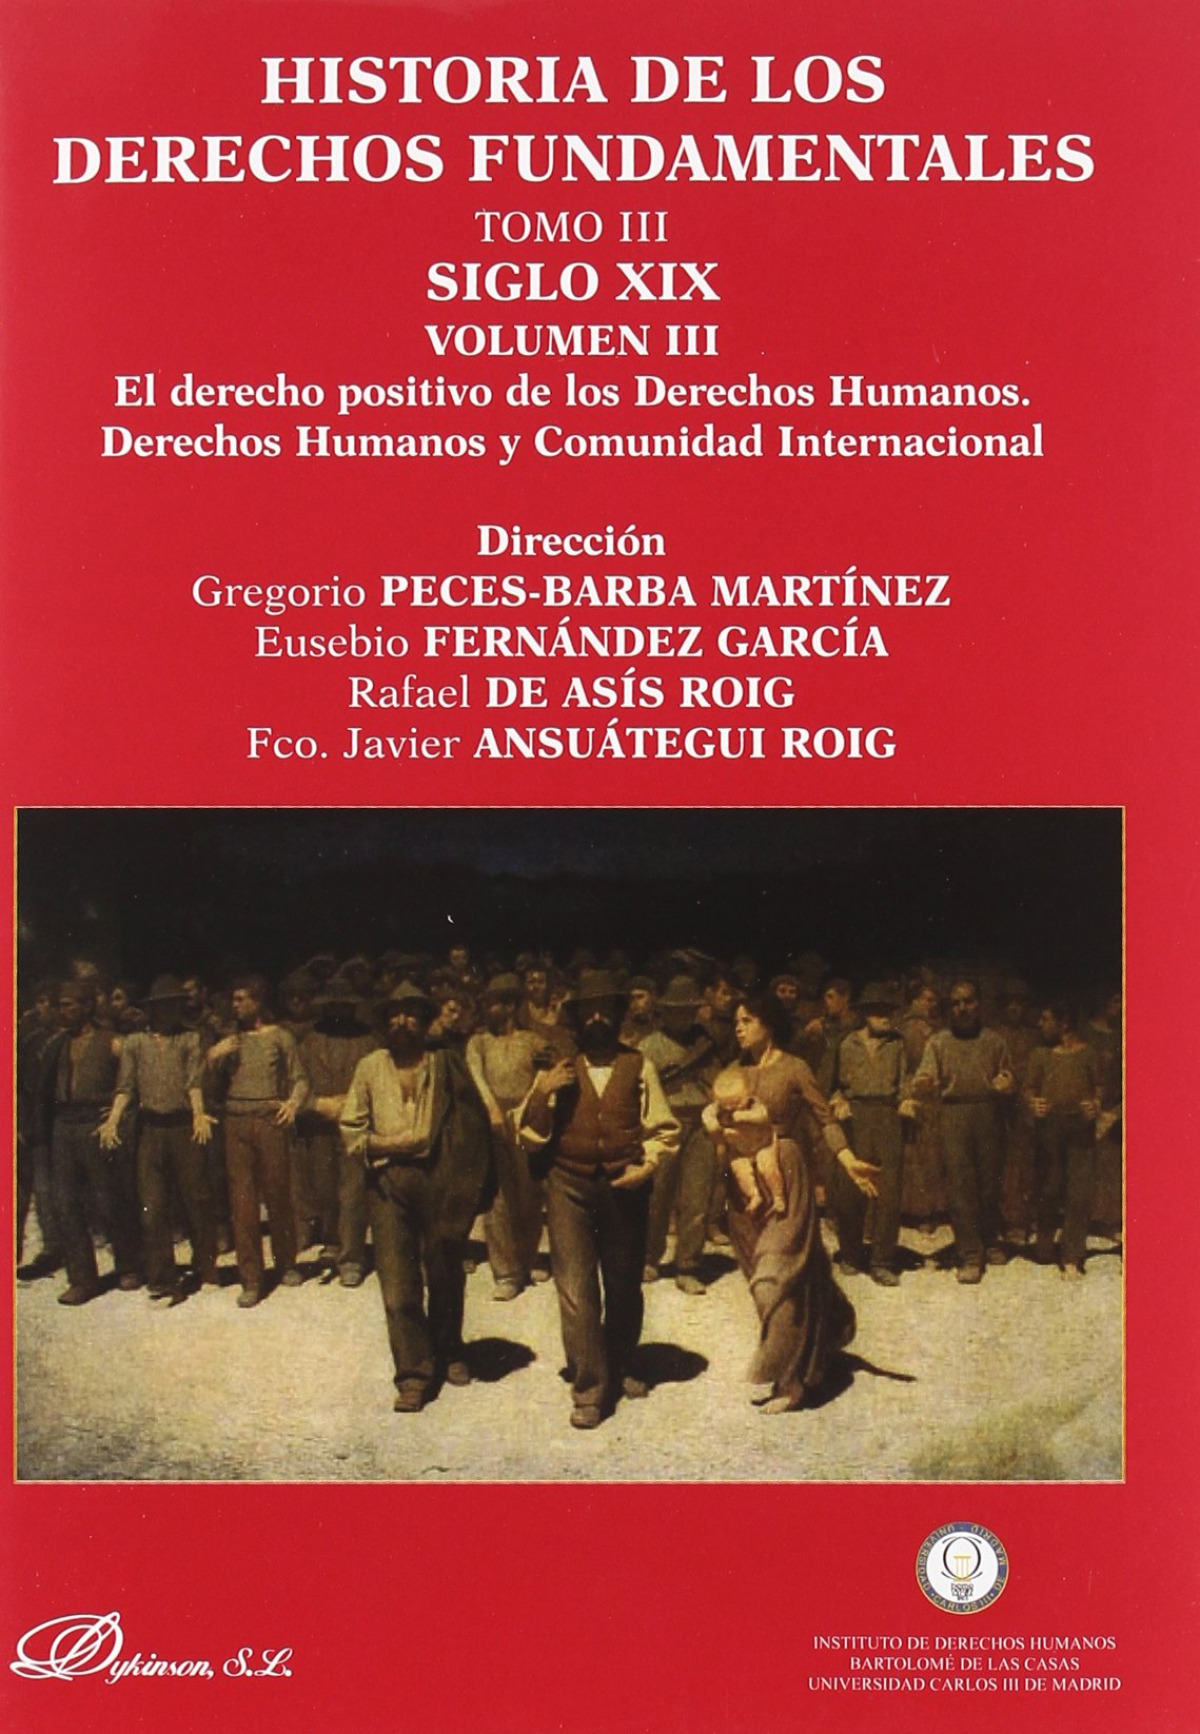 Historia de los derechos fundamentales. Tomo III. Siglo XIX. Volumen I - Peces-Barba Martínez, Gregorio